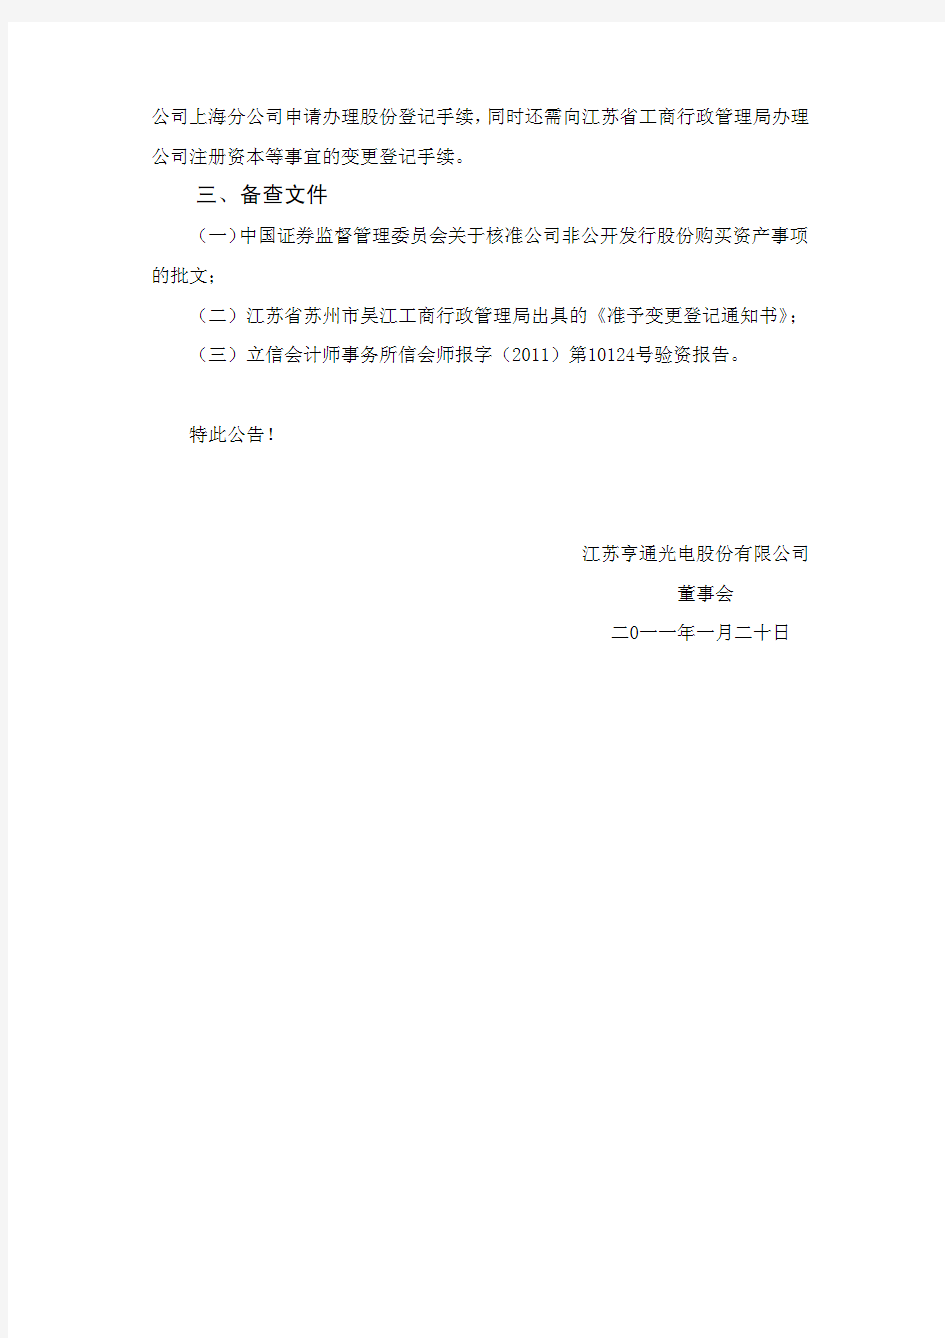 江苏亨通光电股份有限公司 董事会 二0一一年一月二十日